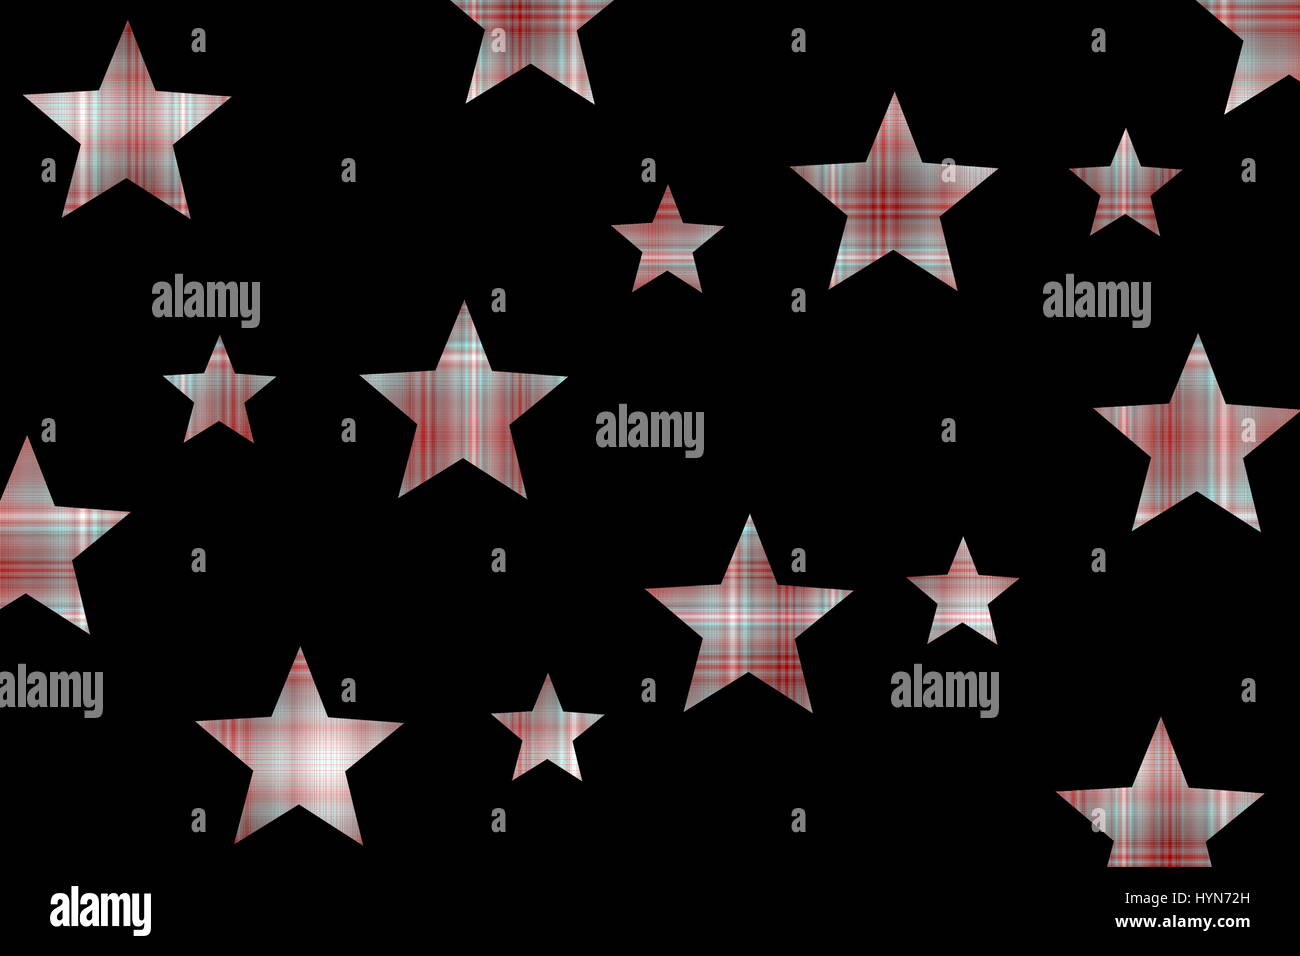 Checkered stars Stock Photo